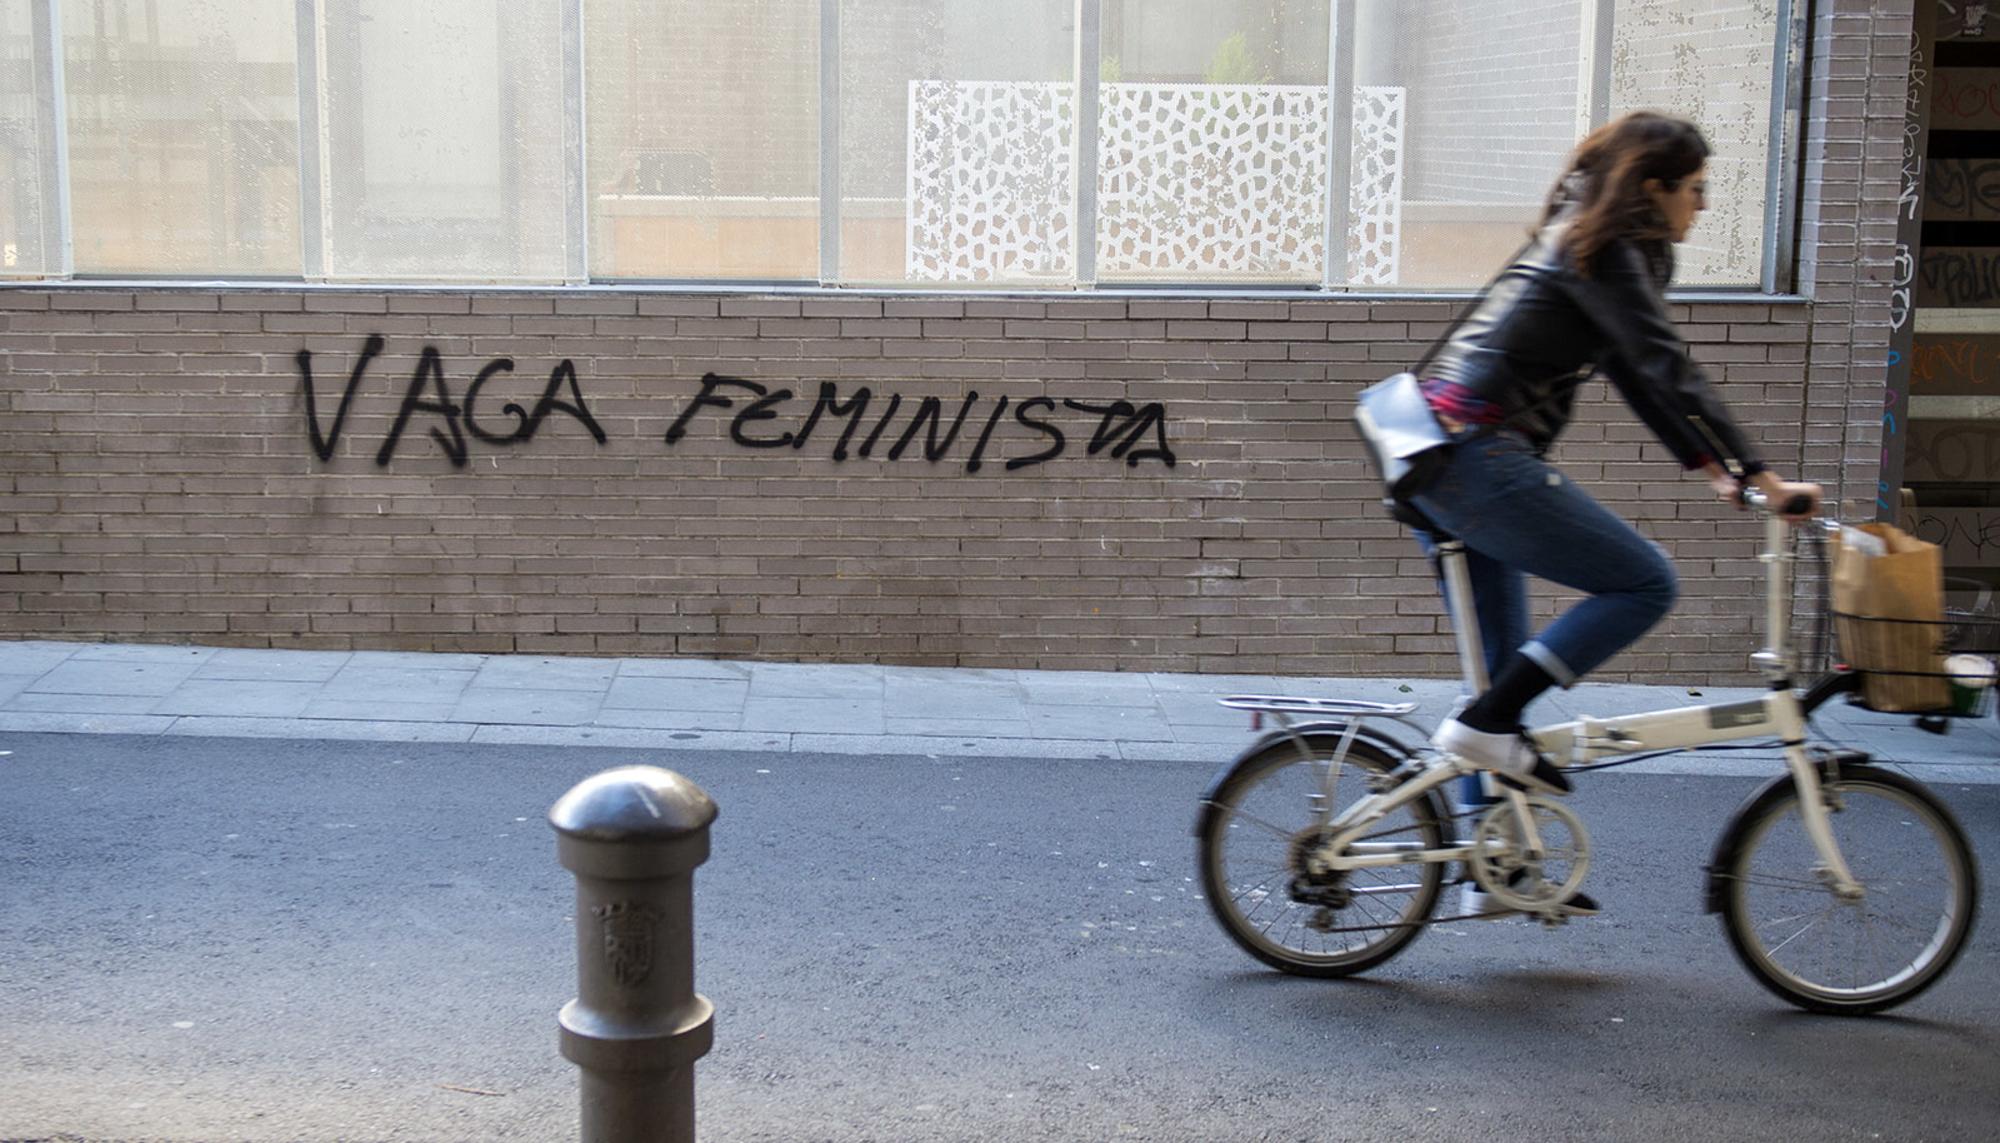 Vaga  Feminista